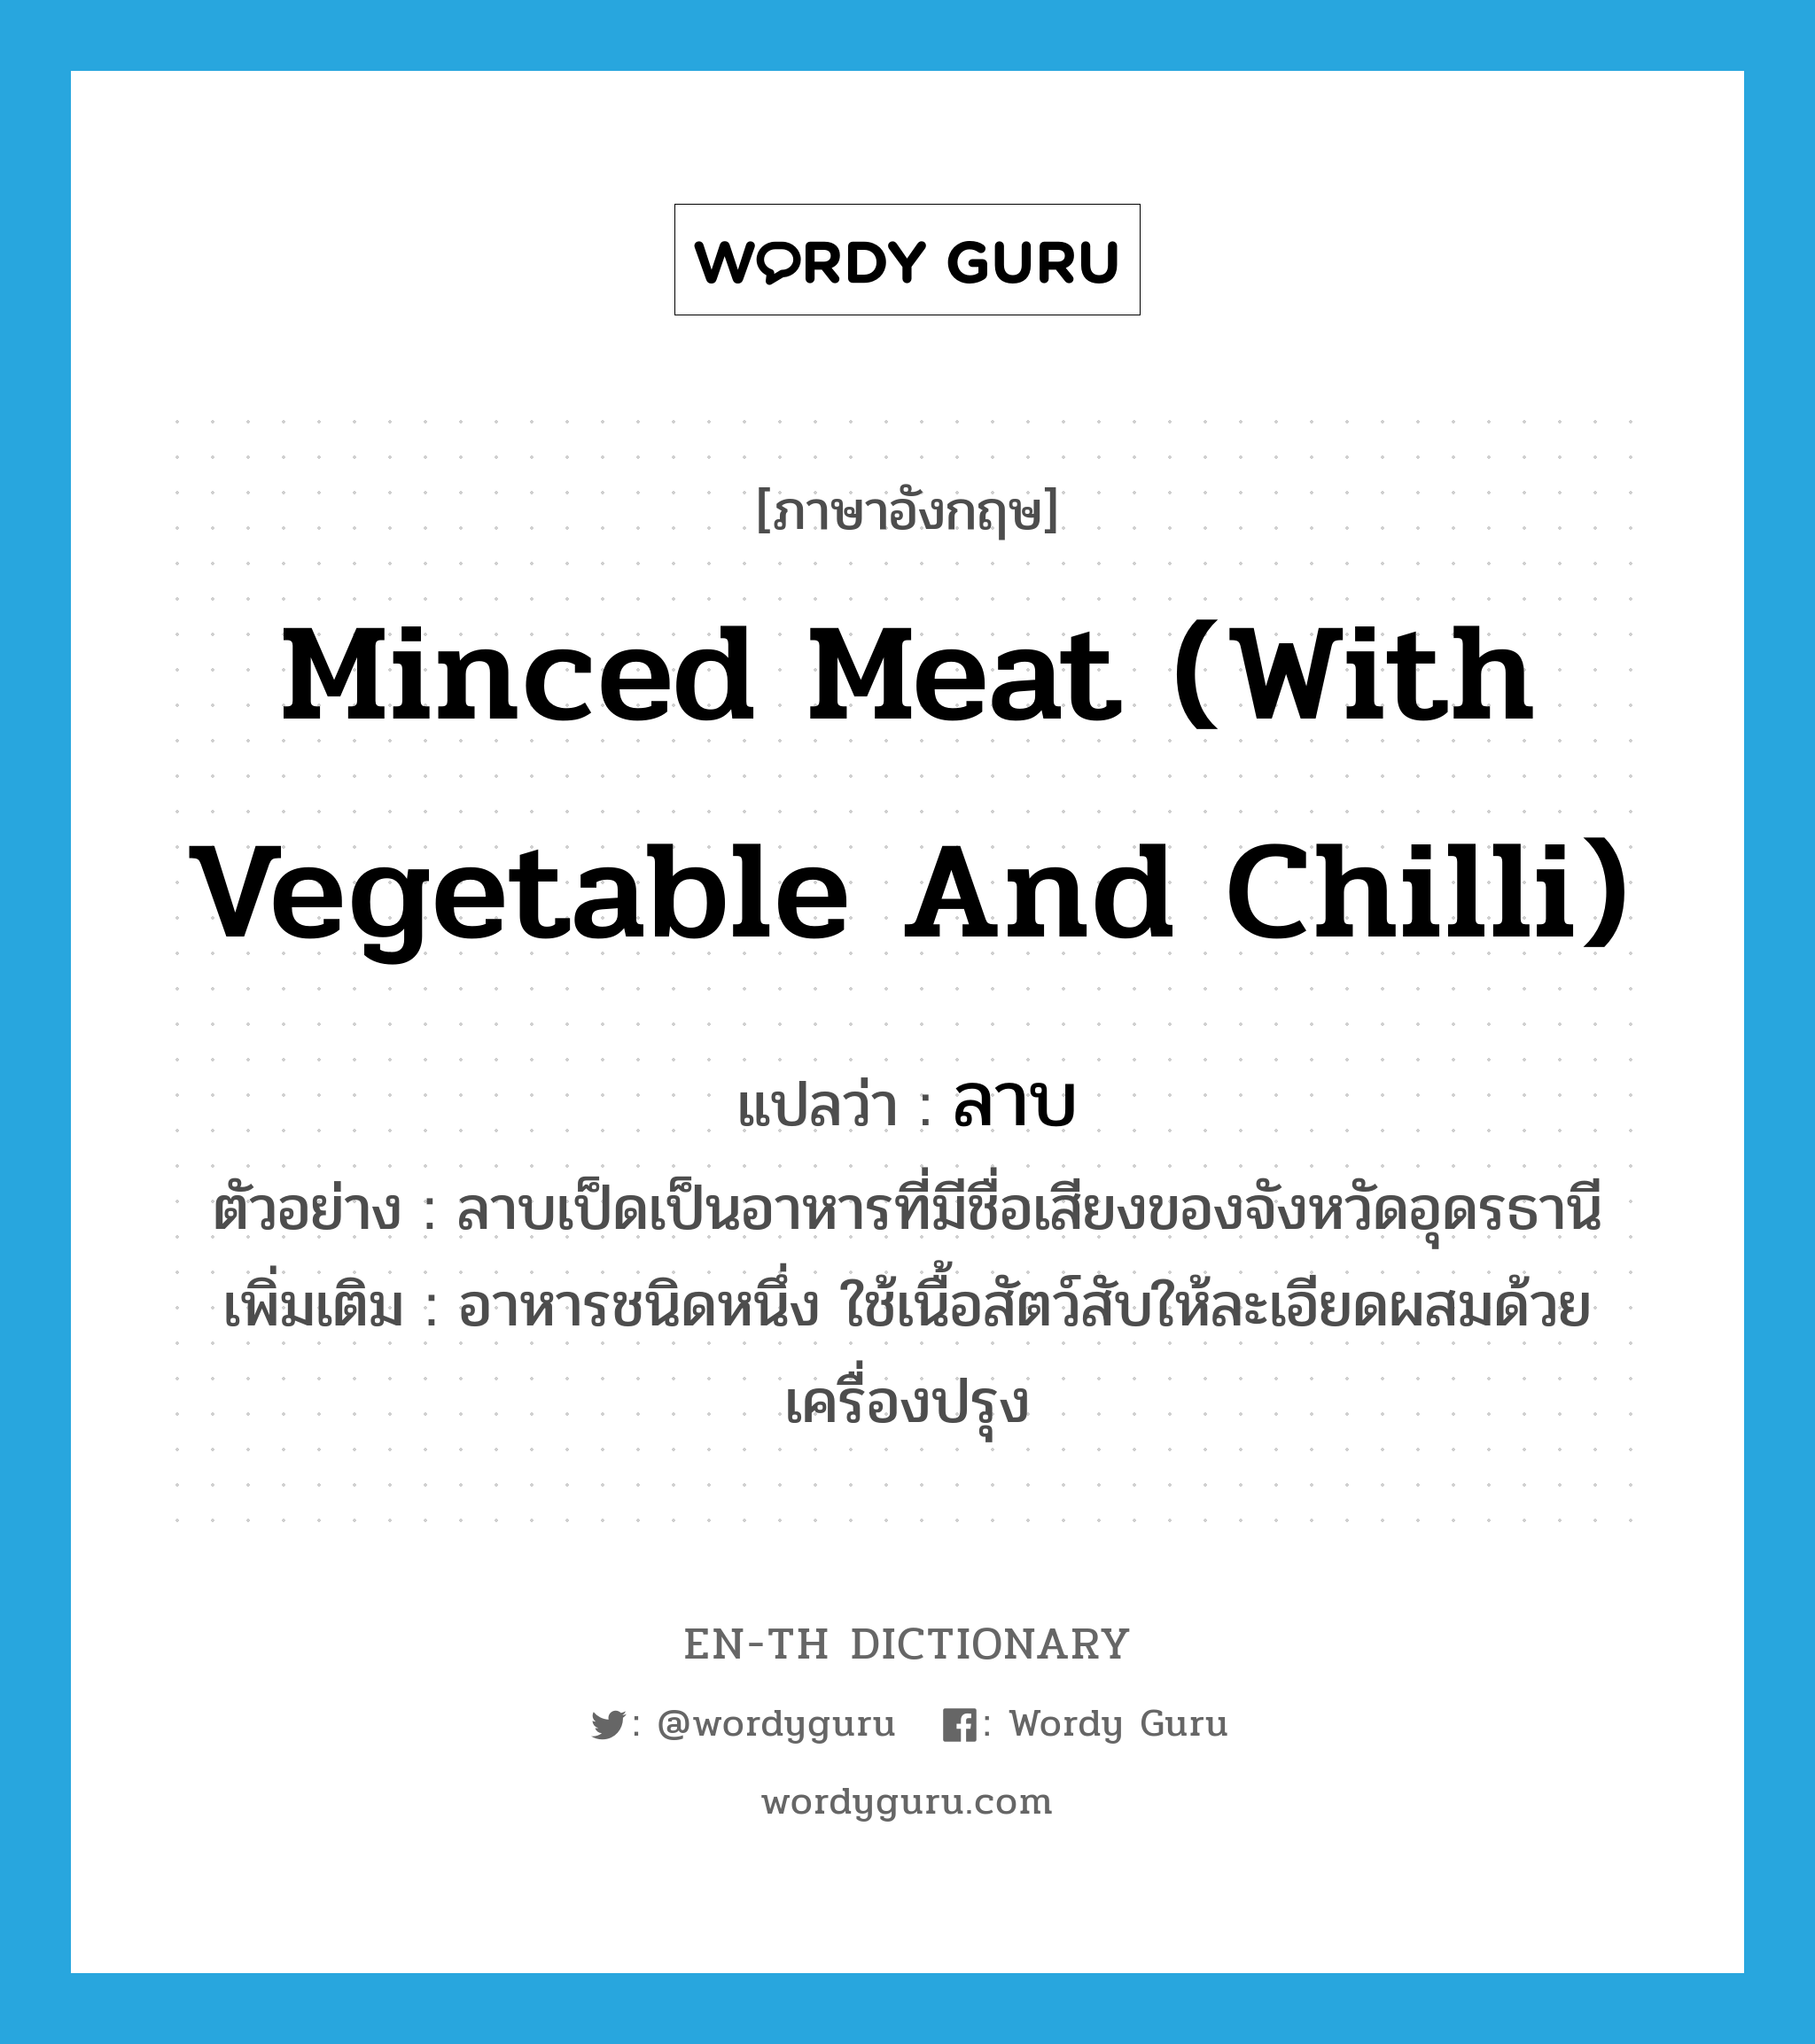 minced meat (with vegetable and chilli) แปลว่า?, คำศัพท์ภาษาอังกฤษ minced meat (with vegetable and chilli) แปลว่า ลาบ ประเภท N ตัวอย่าง ลาบเป็ดเป็นอาหารที่มีชื่อเสียงของจังหวัดอุดรธานี เพิ่มเติม อาหารชนิดหนึ่ง ใช้เนื้อสัตว์สับให้ละเอียดผสมด้วยเครื่องปรุง หมวด N